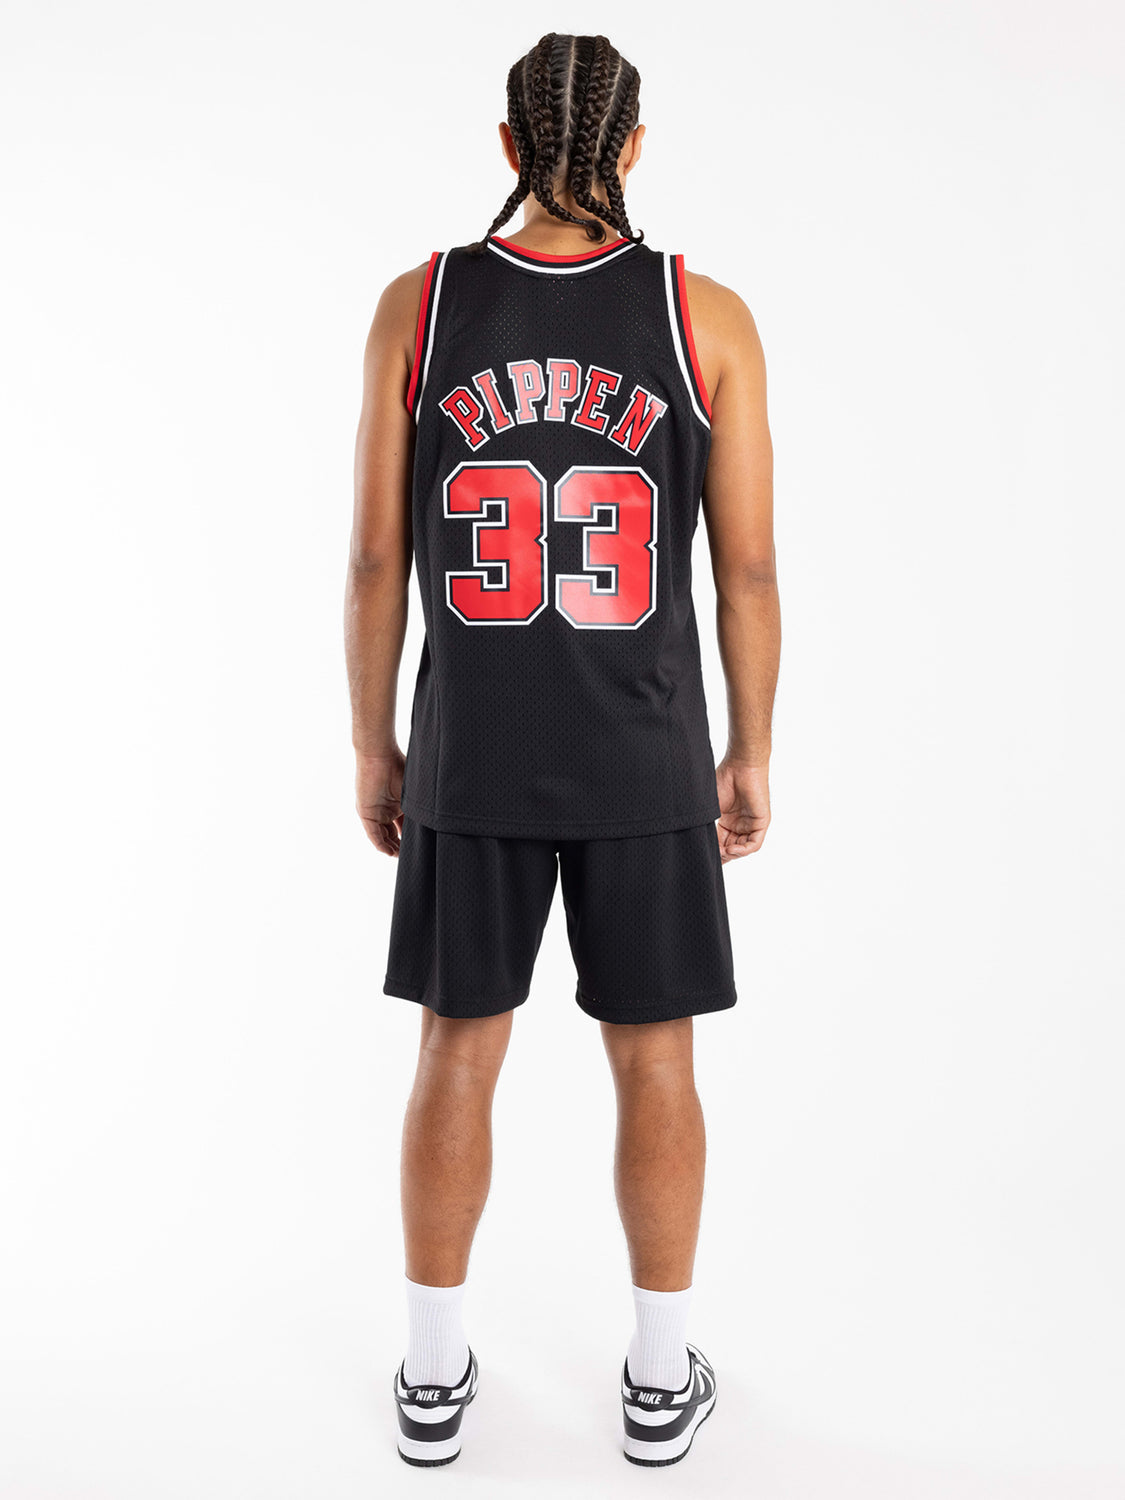 .com : Nike Men's Lakers Kobe Bryant Swingman Jersey Top